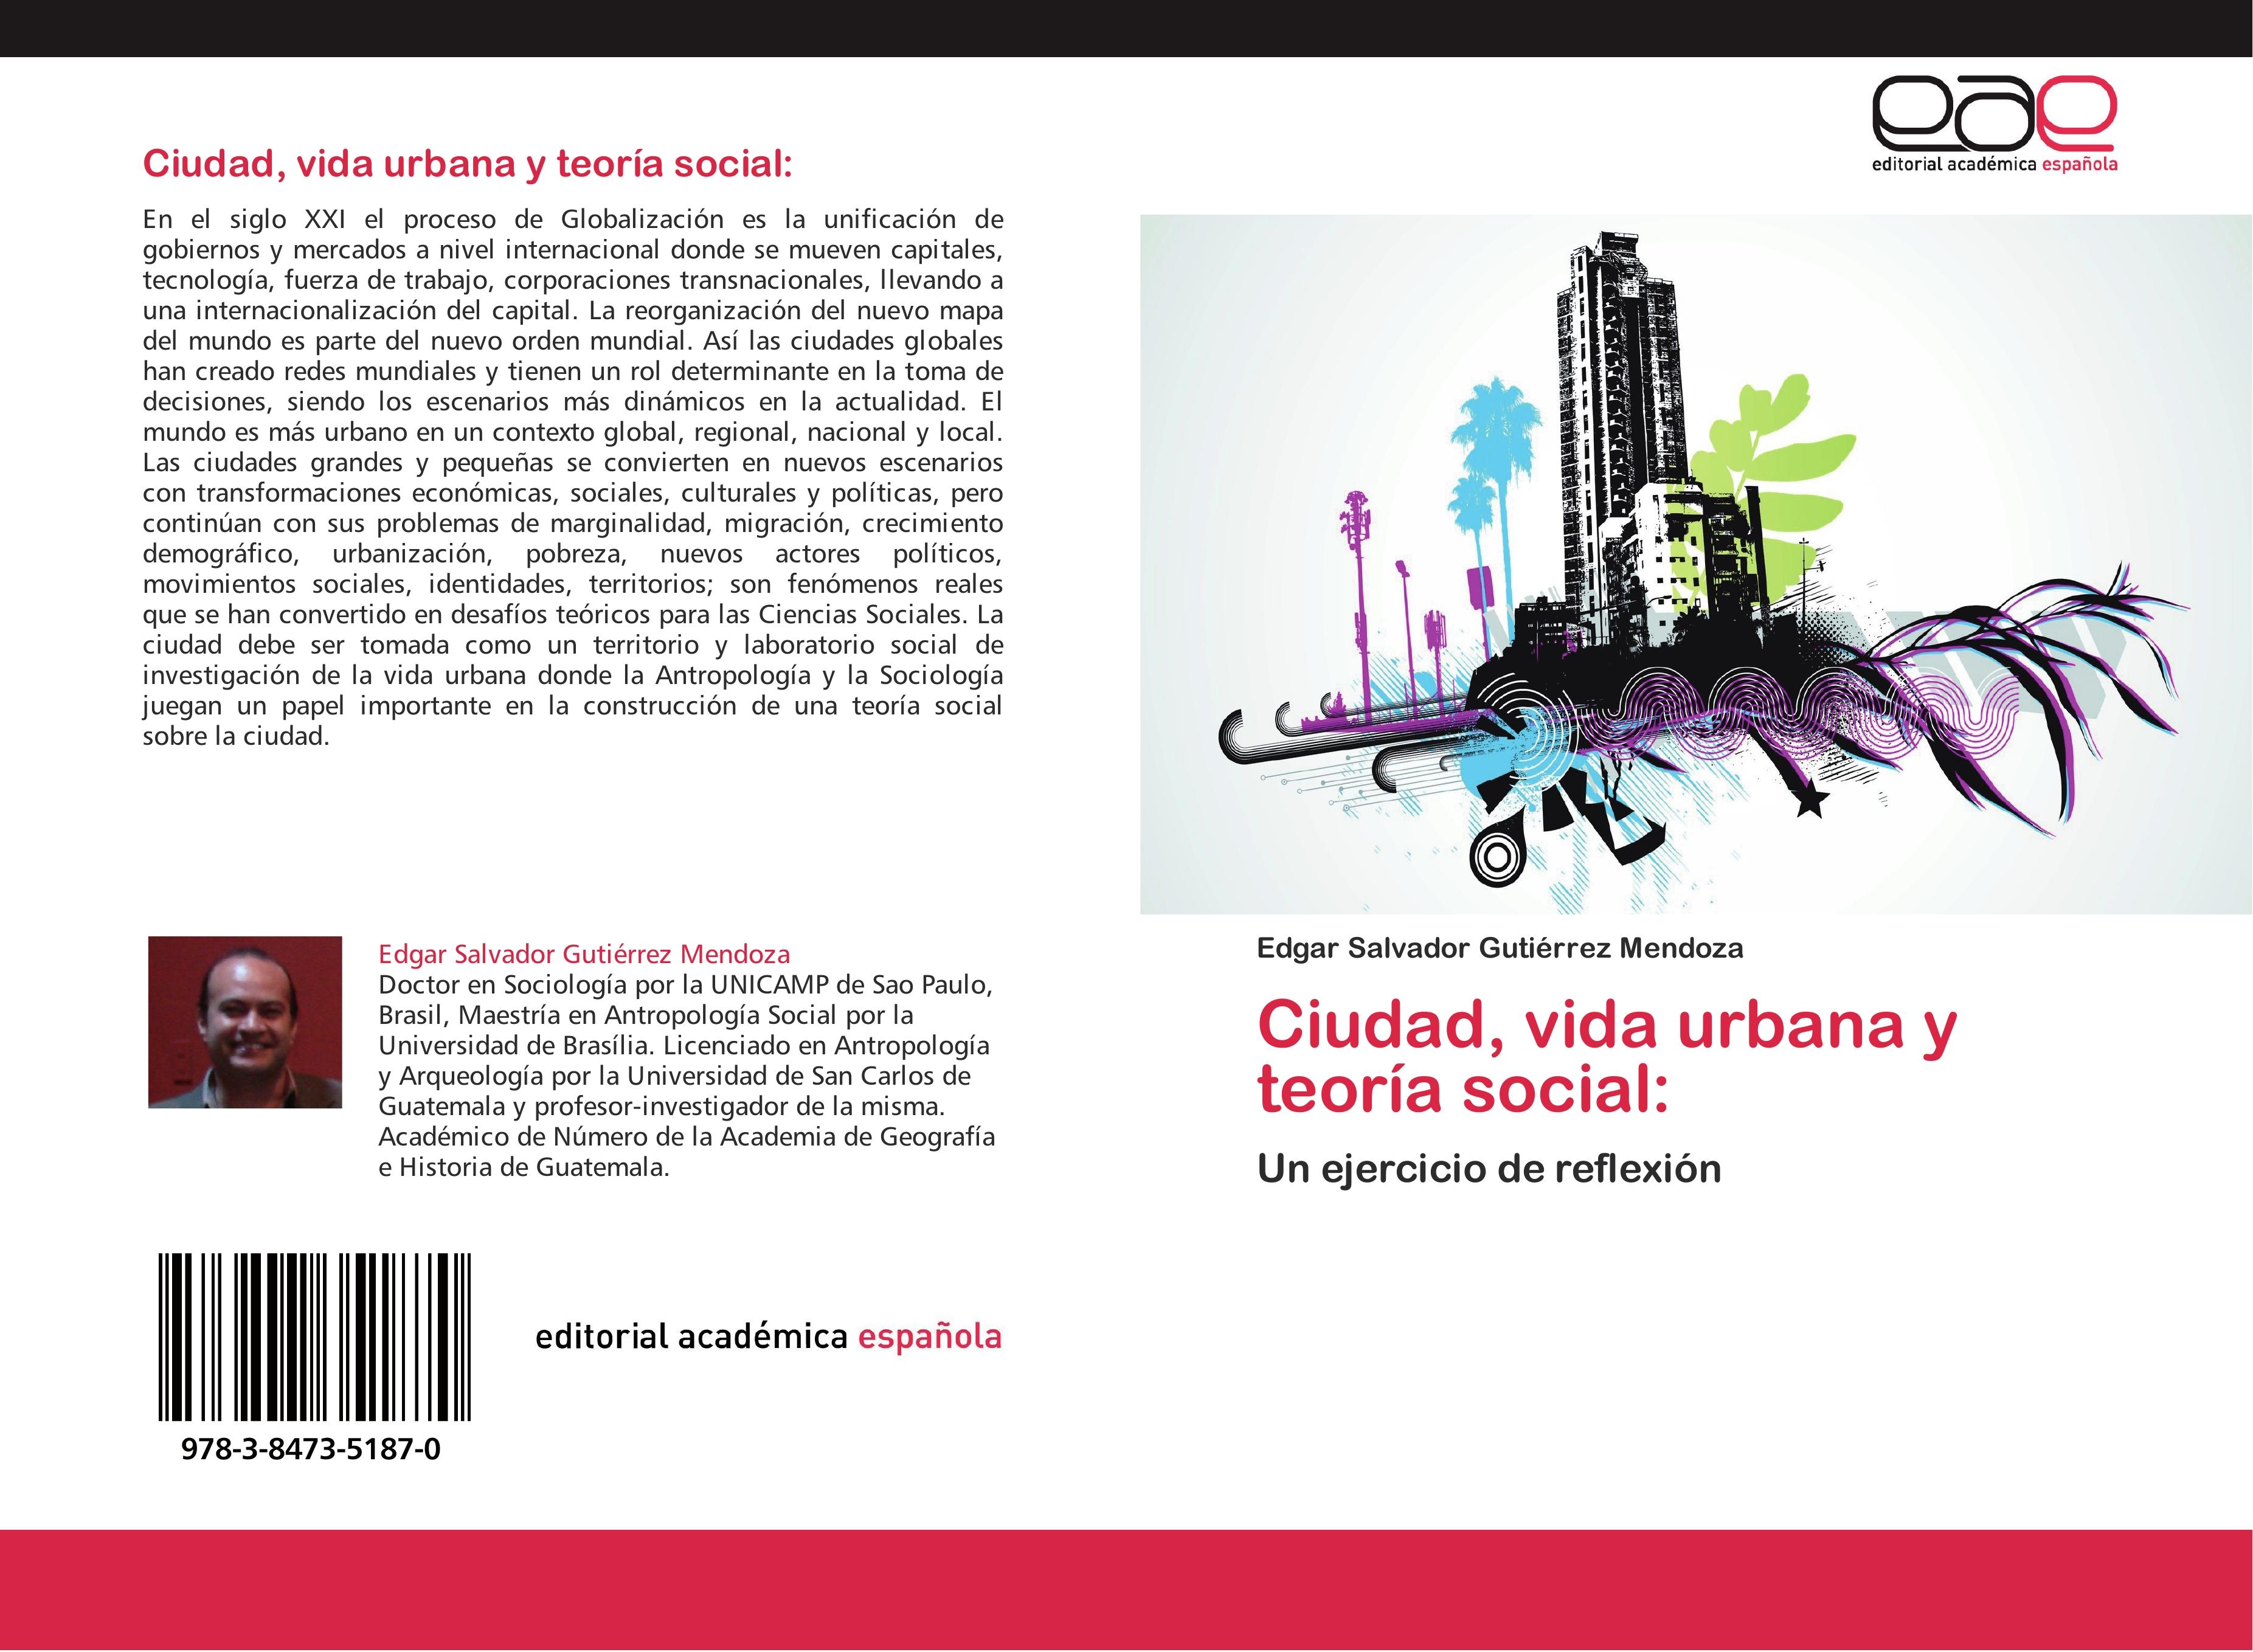 Ciudad, vida urbana y teoría social - Edgar Salvador Gutiérrez Mendoza